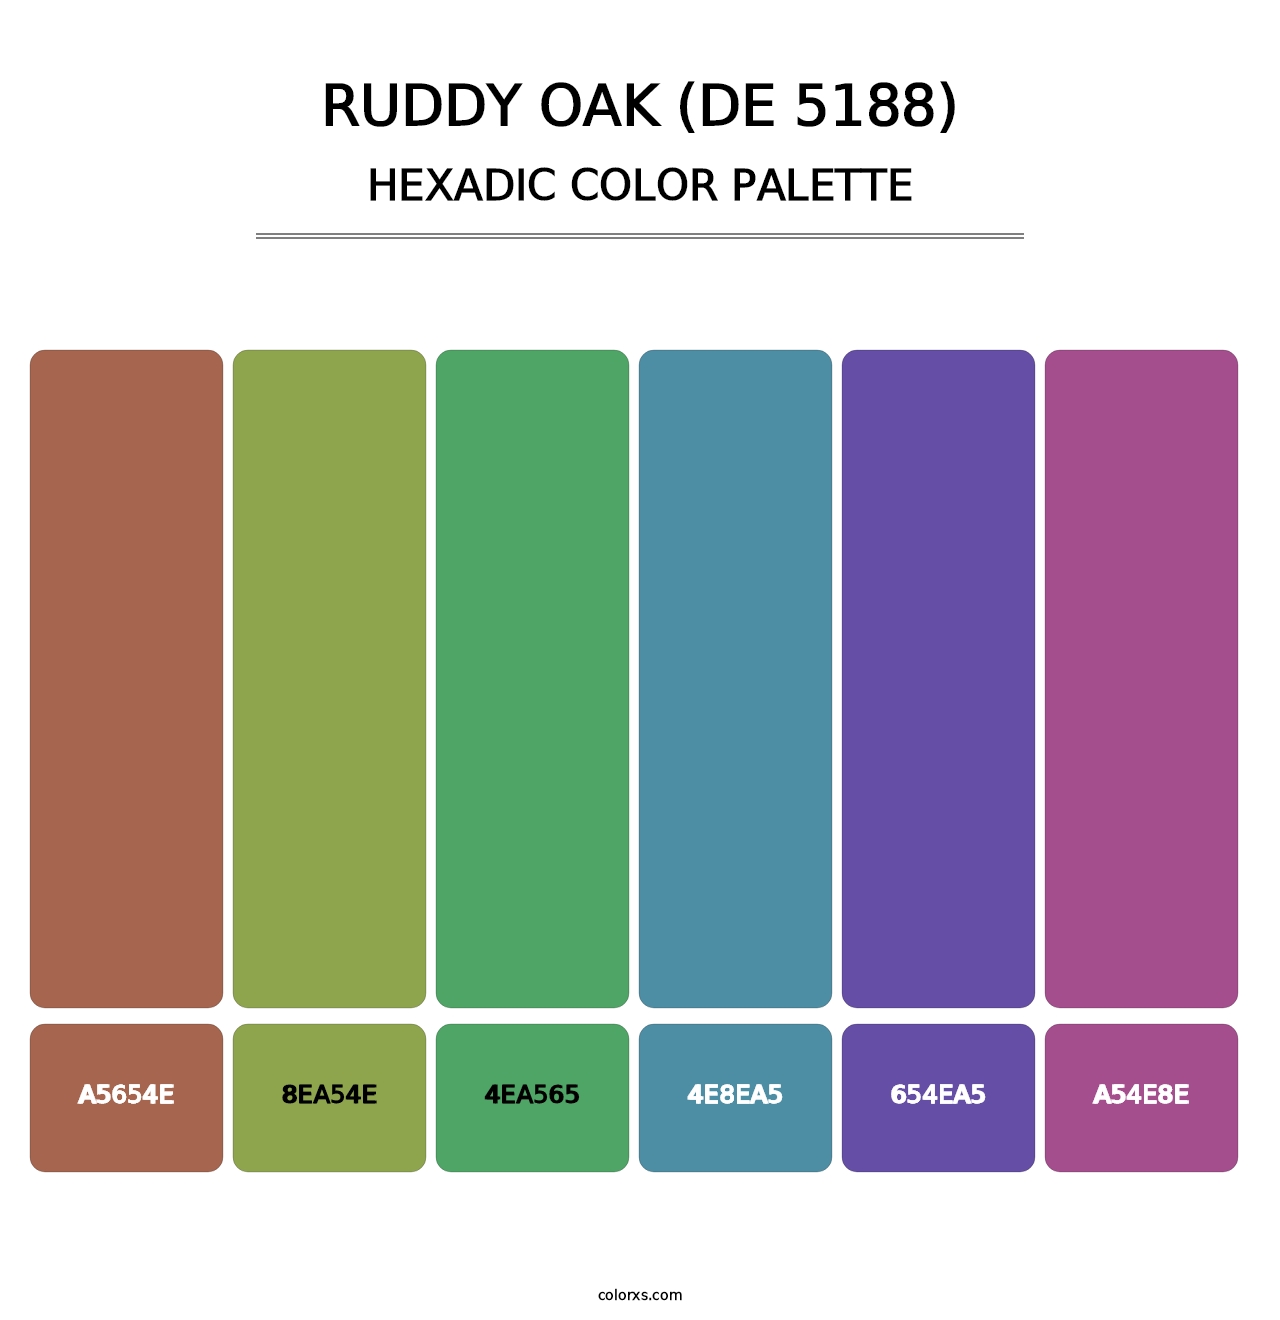 Ruddy Oak (DE 5188) - Hexadic Color Palette